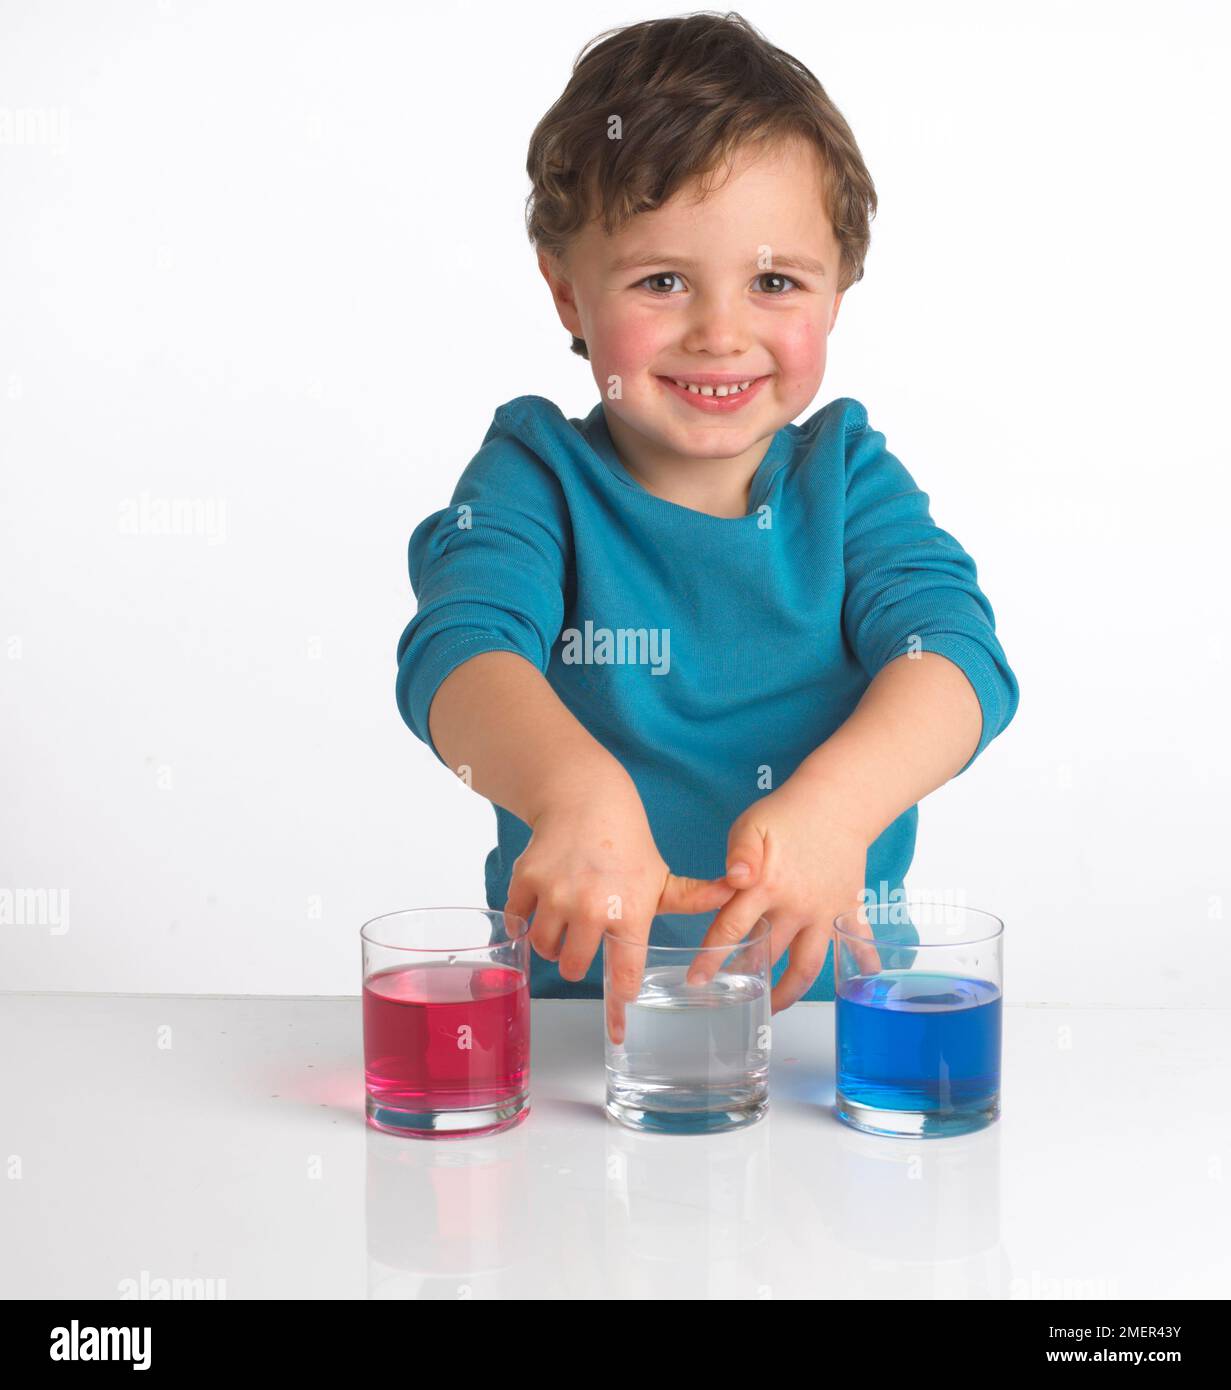 Ragazzo che indossa la parte superiore blu davanti a tre bicchieri contenenti liquido rosso, liquido trasparente e liquido blu, 4 anni Foto Stock